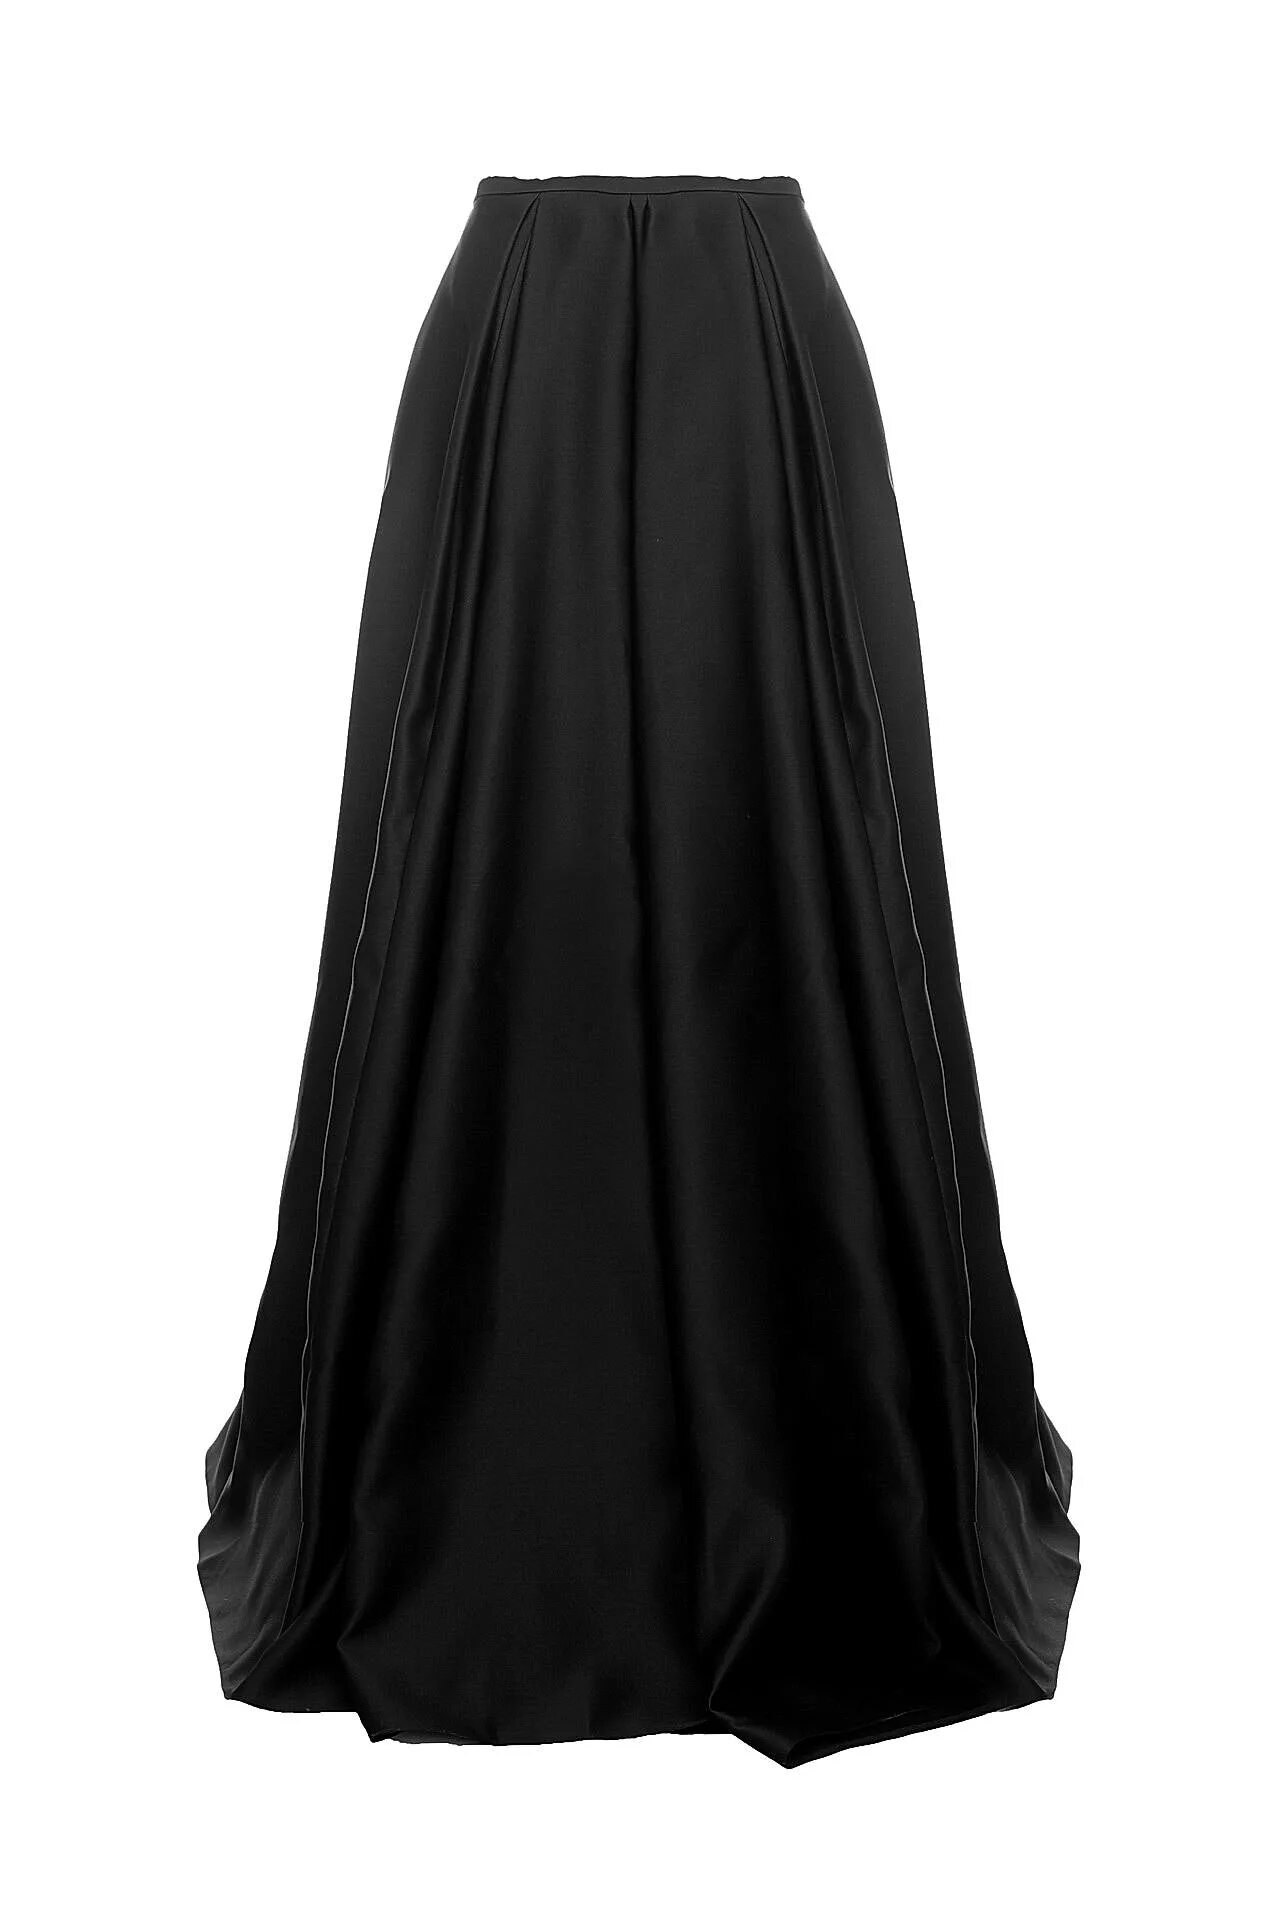 Длинная черная юбка. Юбки женские длинные. Юбка широкая длинная. Концертная юбка.